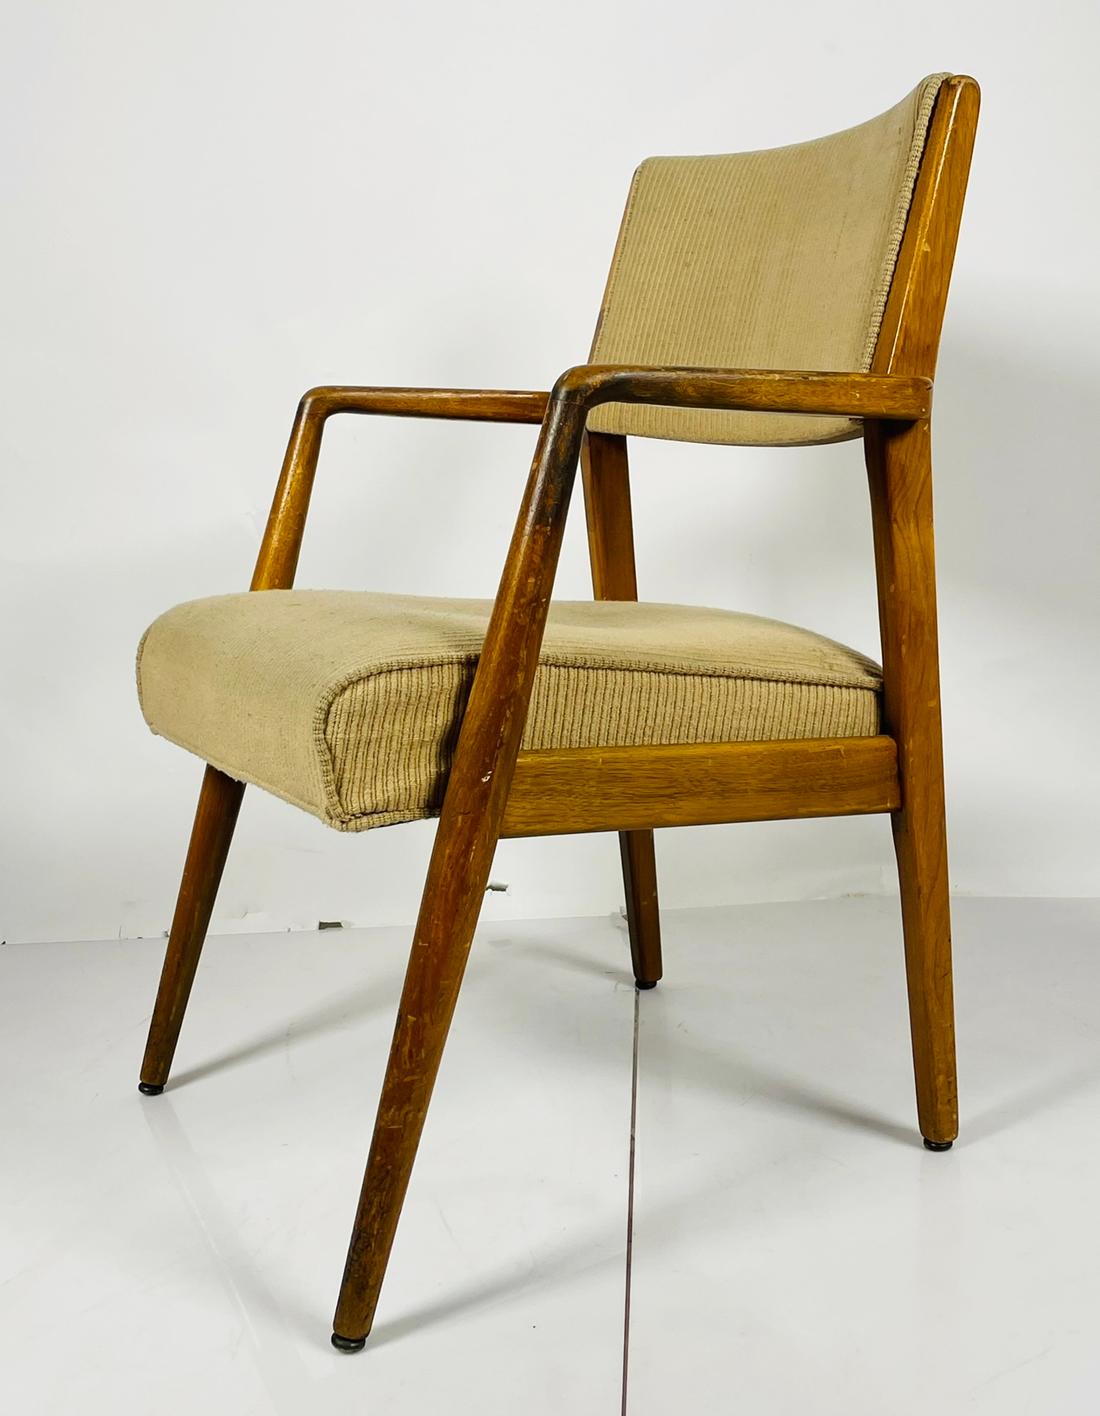 Voici le fauteuil Vintage de Maurice Bailey pour Monteverdi-Young - un véritable chef-d'œuvre de design mobilier. Ce superbe fauteuil présente une esthétique classique et intemporelle qui ne manquera pas d'embellir tout espace de vie. 

Conçu par le